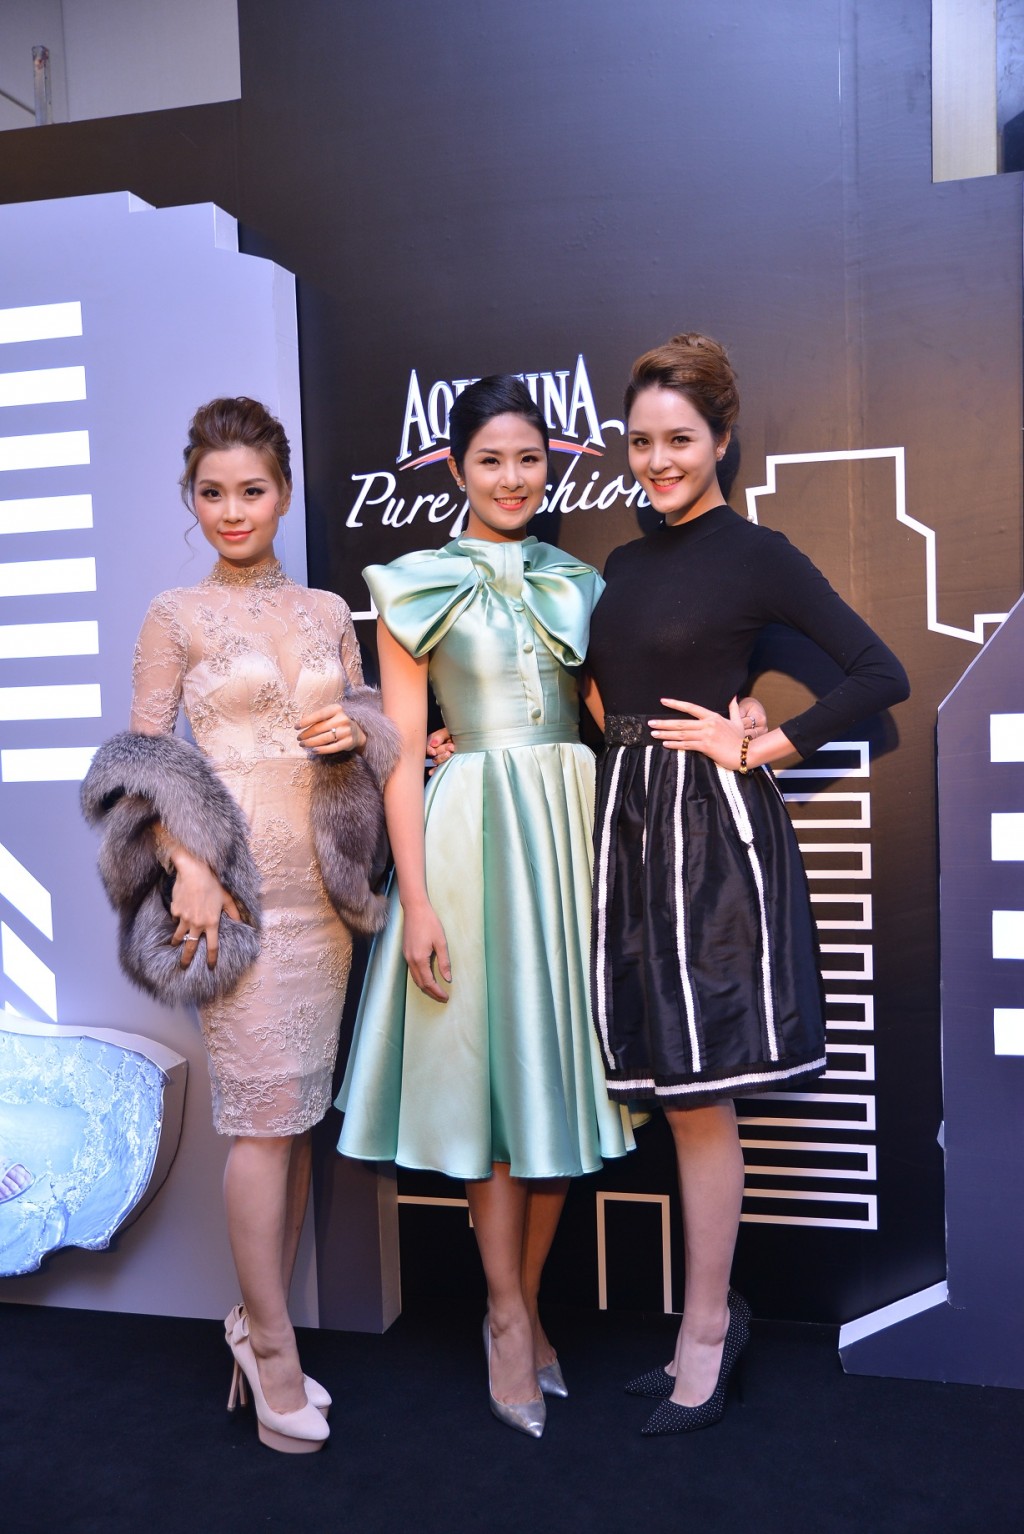 Hoa hậu Ngọc Hân, Á hậu Tú Anh, Á hậu Diễm Trang góp mặt trong đêm Chung kết Aquafina Pure Fashion 2015